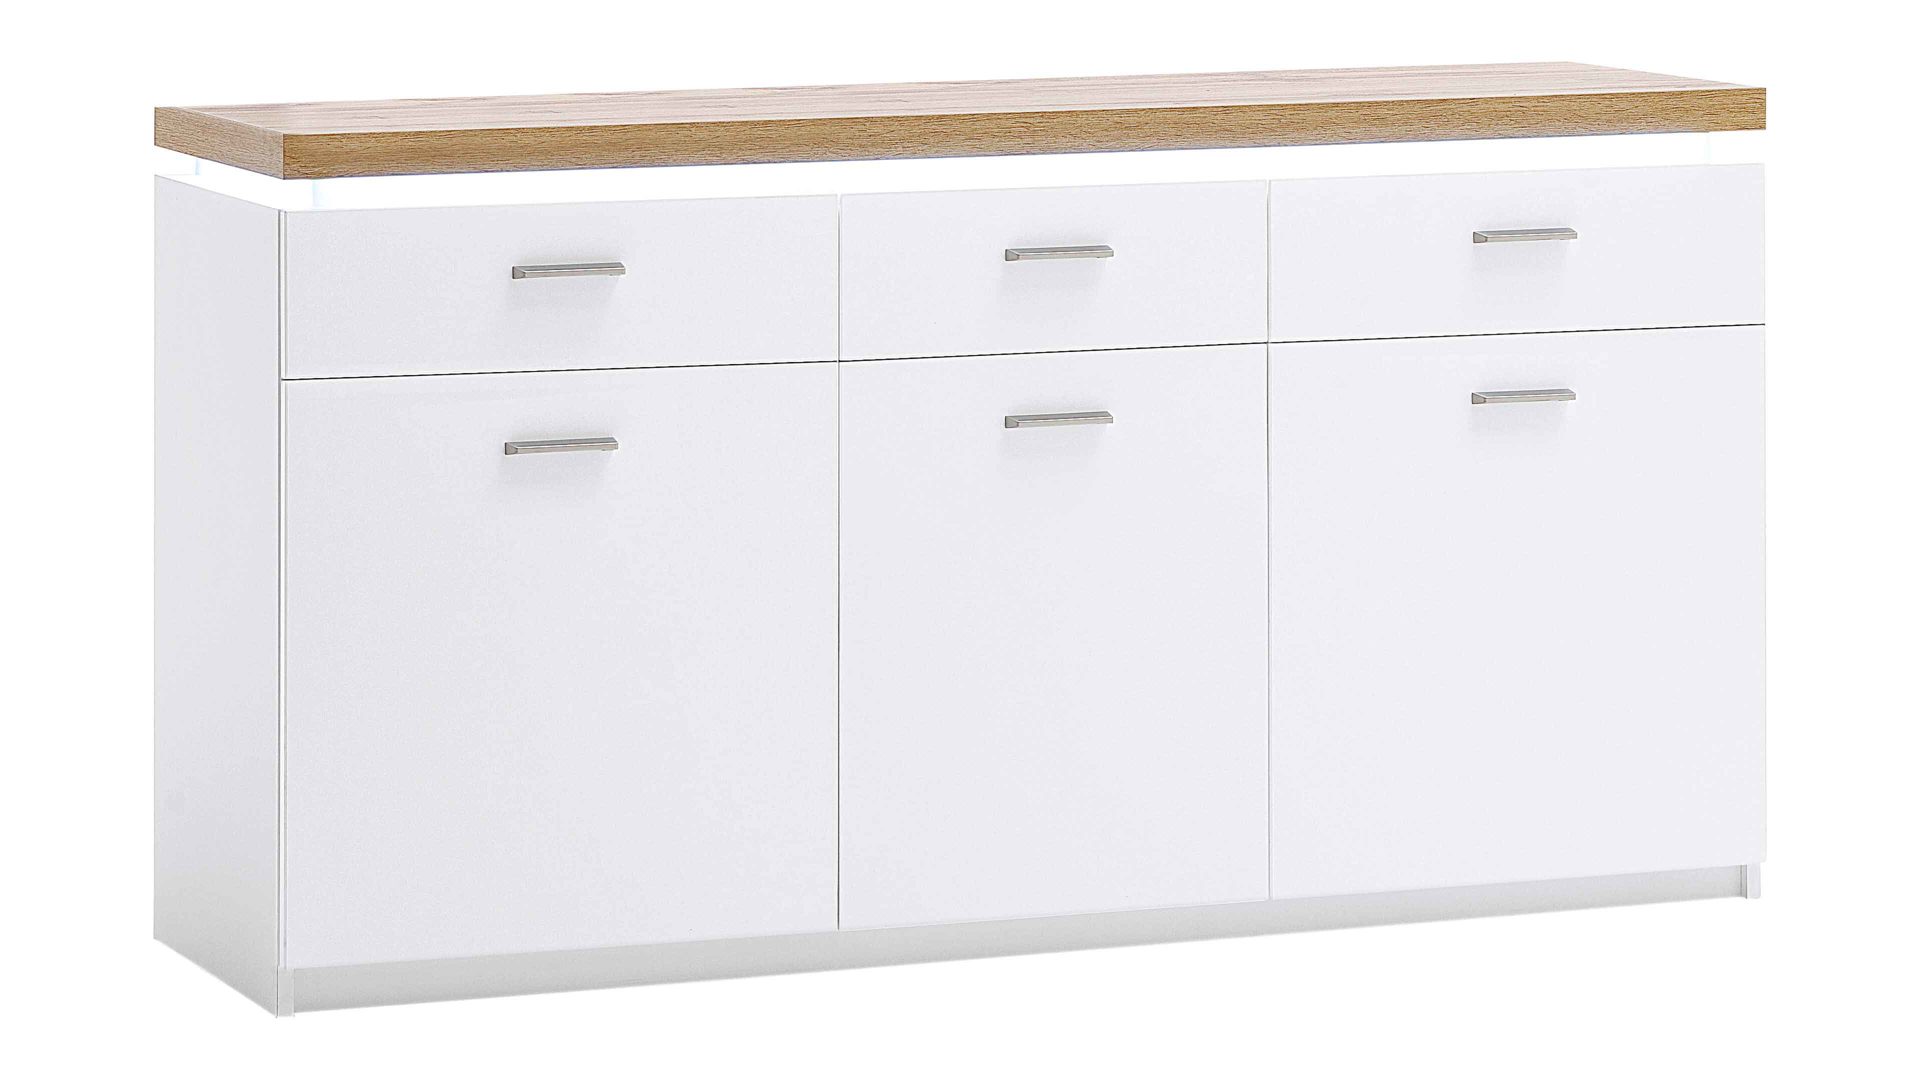 Sideboard Mca furniture aus Holz in Weiß Wohnprogramm Cali - Sideboard 01 Weiß & Wotan Eiche - drei Türen, drei Schubladen, Breite ca. 156 cm